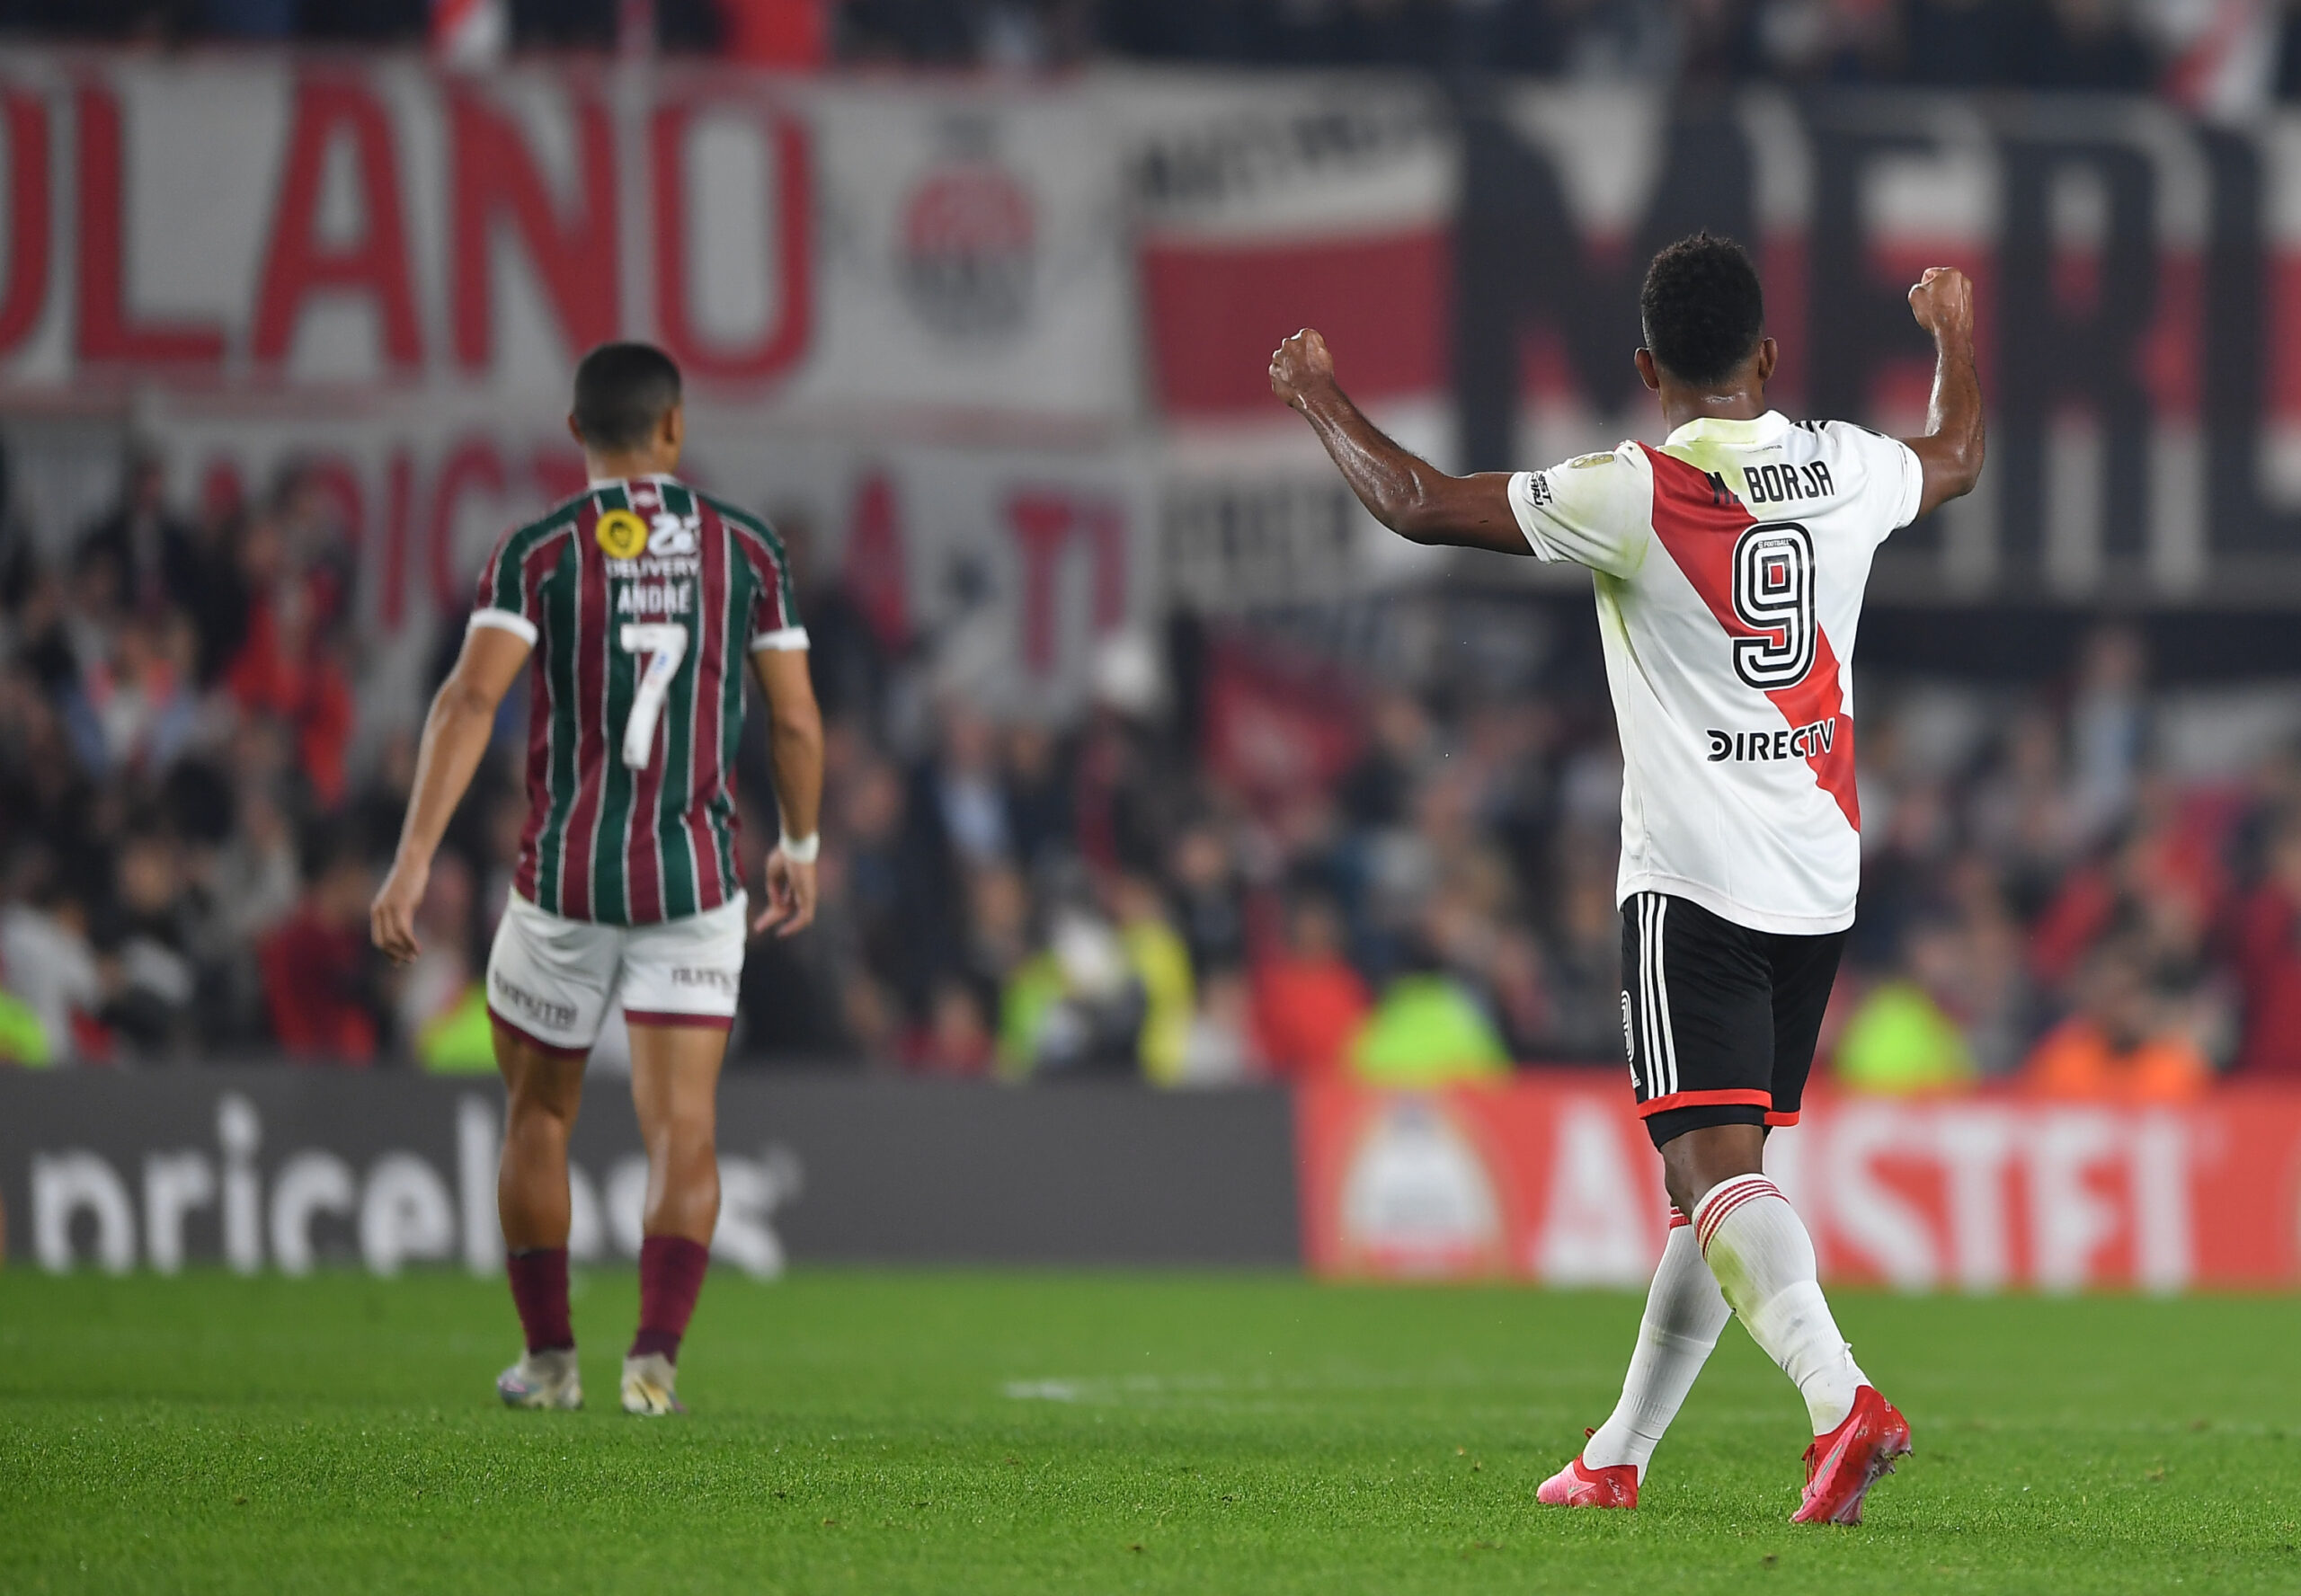 River won and kept its Copa Libertadores hopes alive